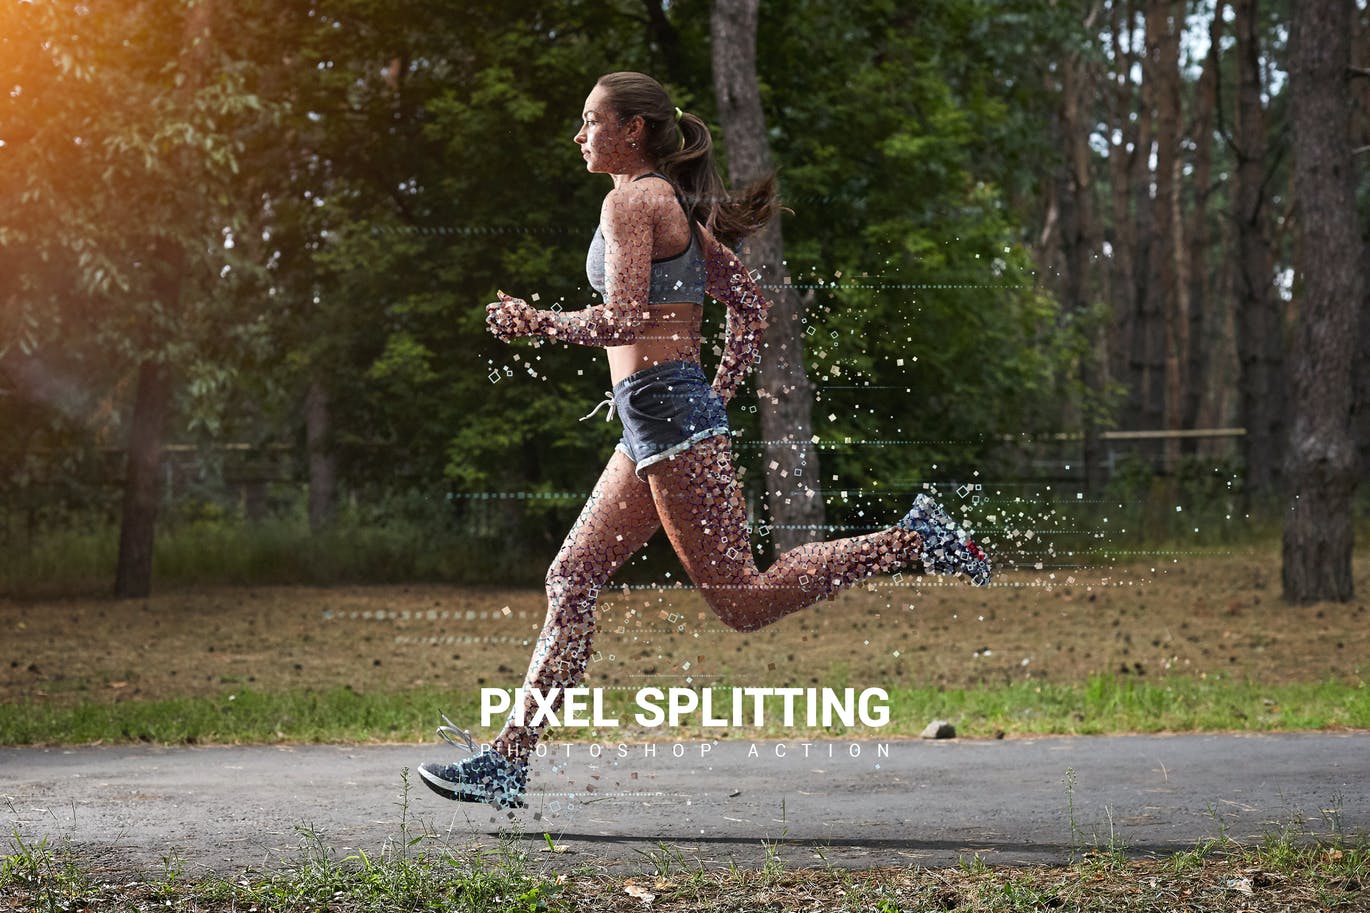 分割像素照片特效Photoshop动作 Pixel Splitting Photoshop Action设计素材模板